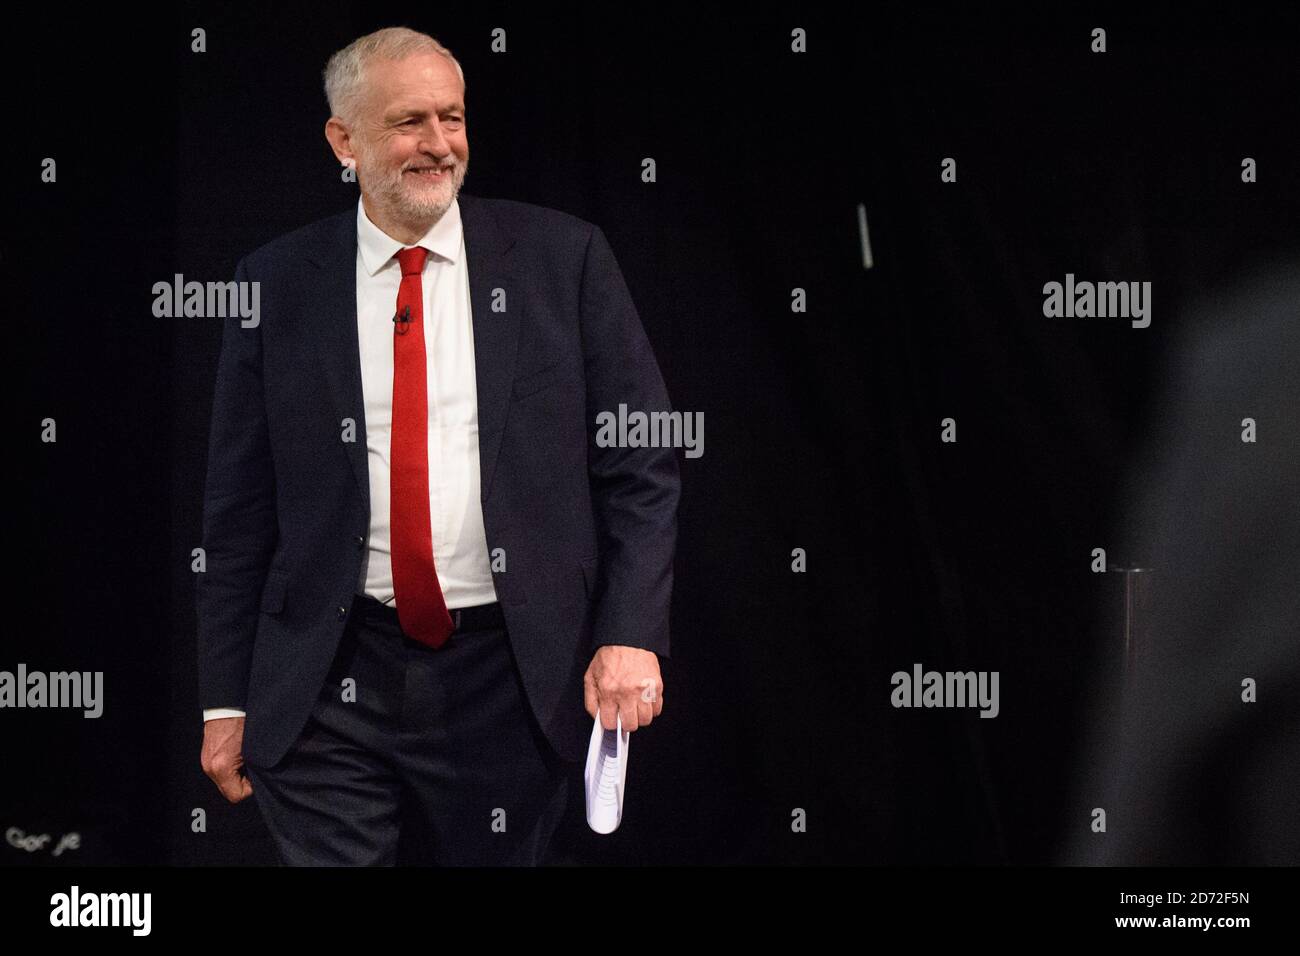 Jeremy Corbyn ha raffigurato prima di dare il suo discorso del leader, durante la conferenza del Partito laburista a Brighton. Data immagine: Mercoledì 27 settembre 2017. Il credito fotografico dovrebbe essere: Matt Crossick/ EMPICS Entertainment. Foto Stock